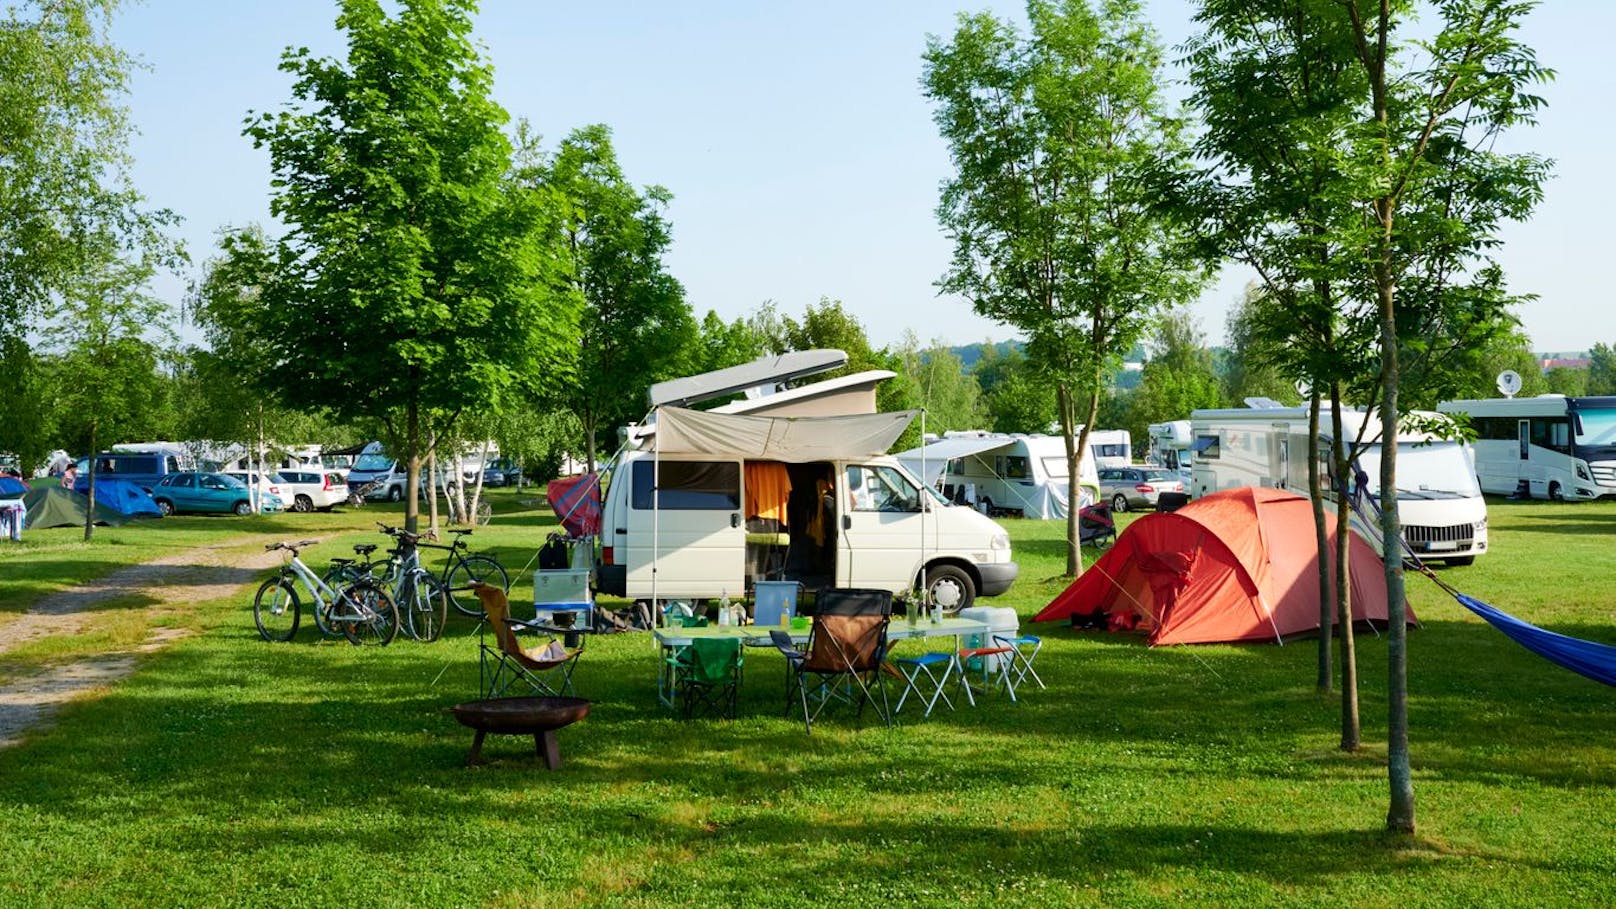 Preisvergleich – wo Camping heuer am günstigsten ist